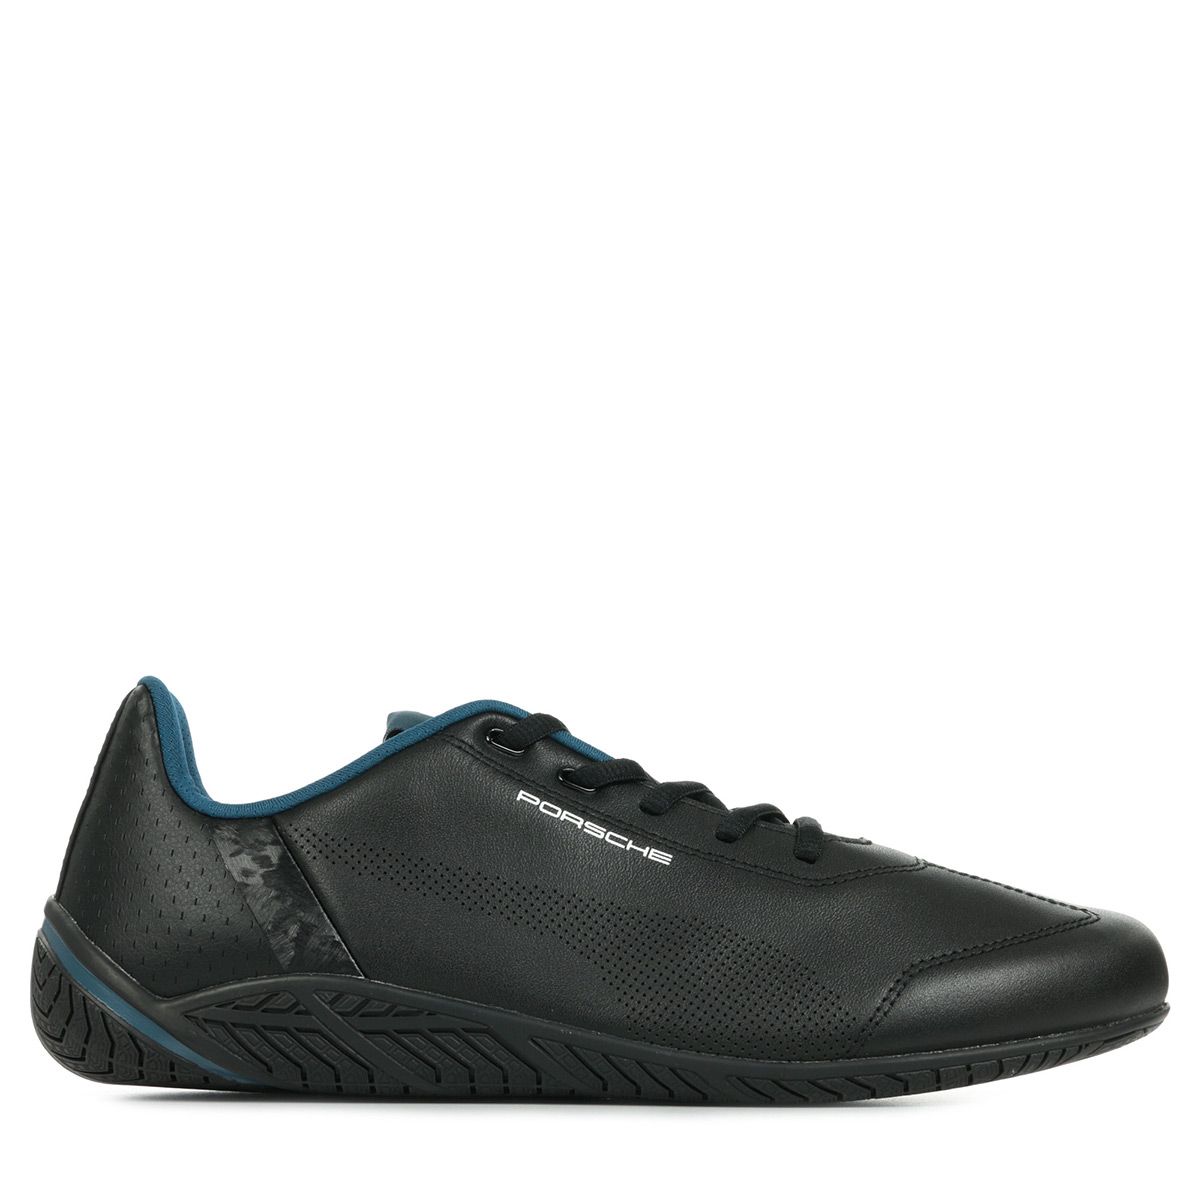 الفوار الاصفر Chaussures puma cuir noir | La Redoute الفوار الاصفر